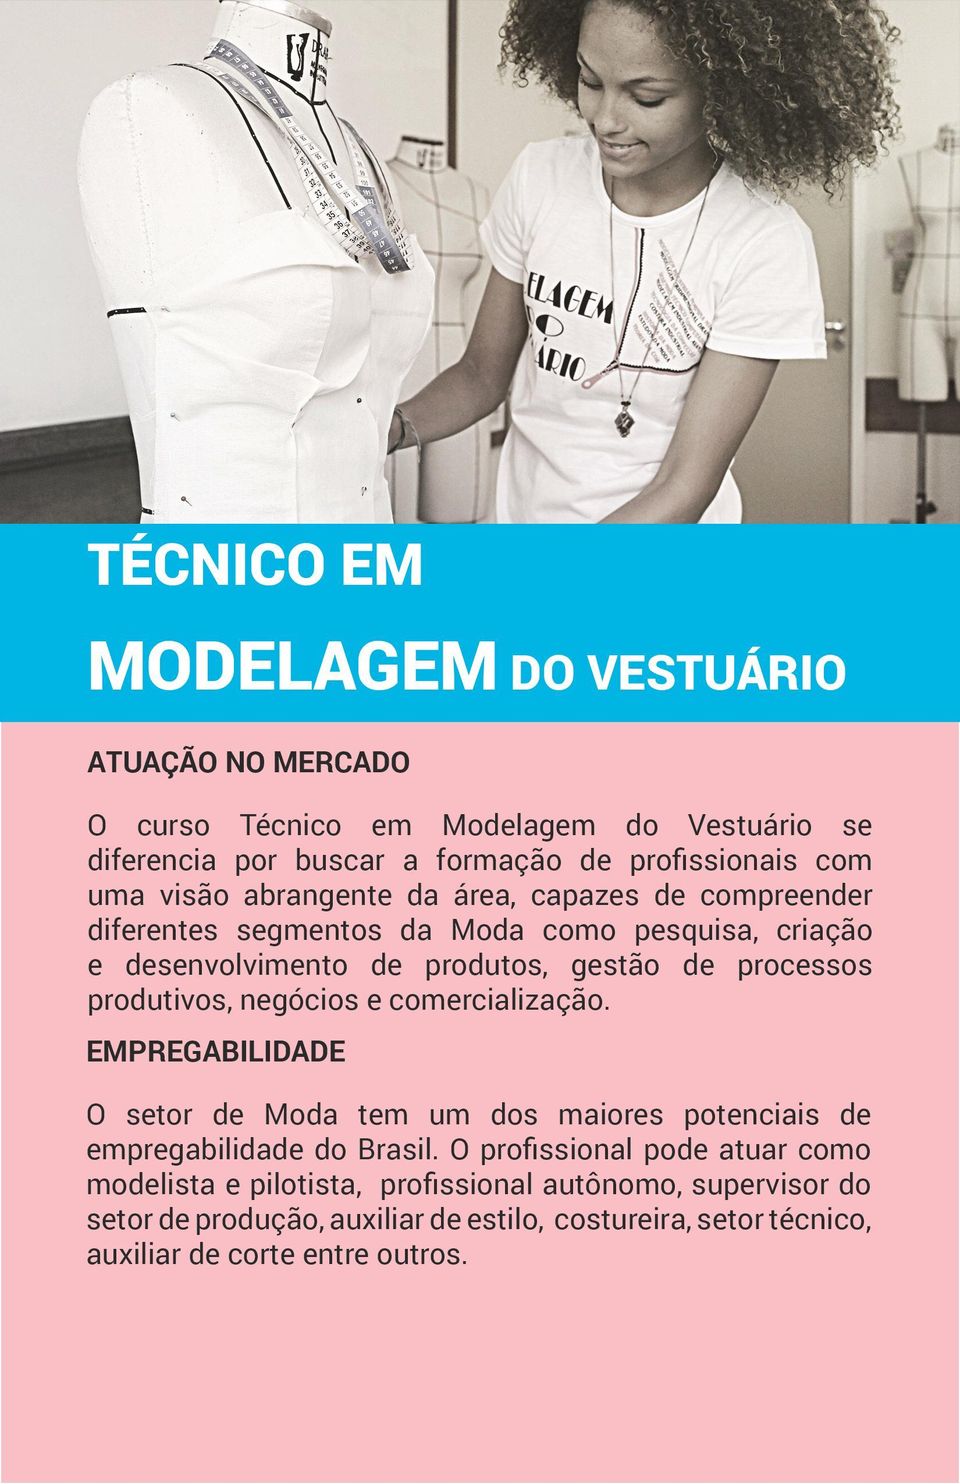 negócios e comercialização. O setor de Moda tem um dos maiores potenciais de empregabilidade do Brasil.